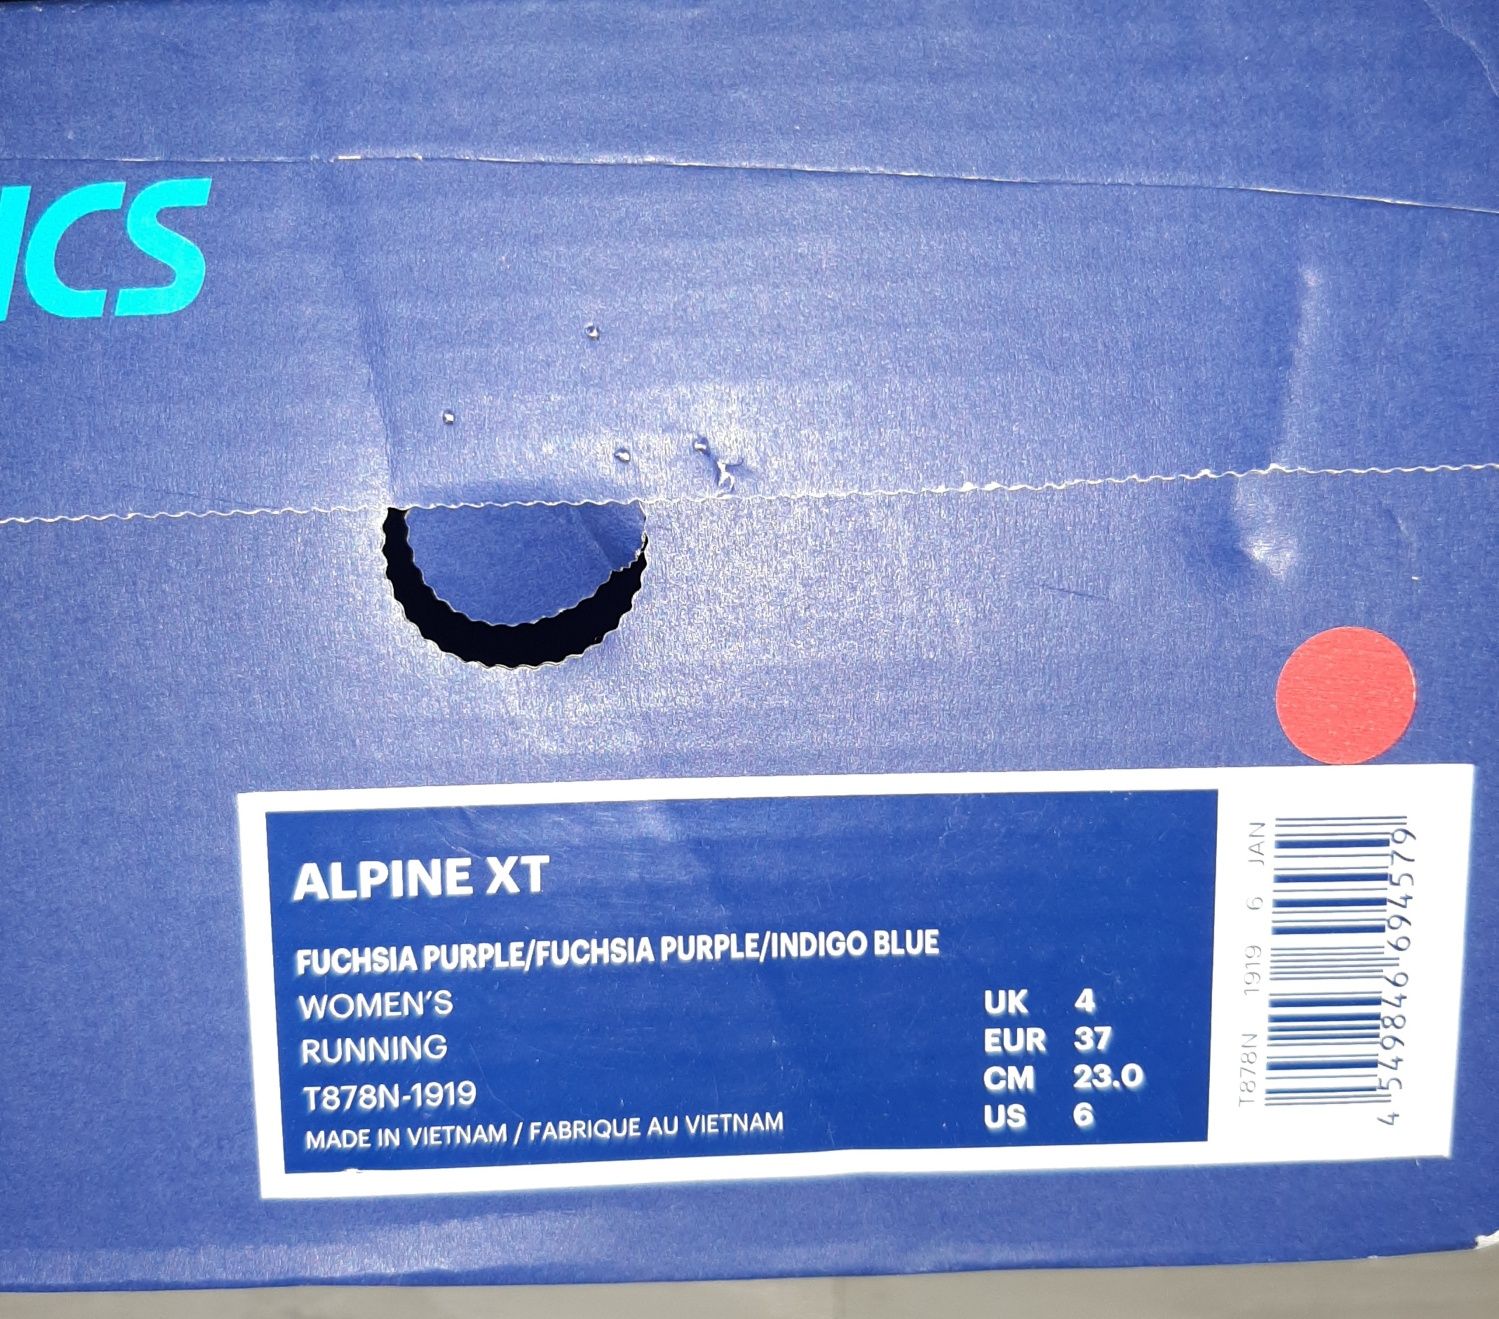 ASICS-оригинални дамски маратонки
Нови,с кутия и етикети
Размер-37
Сте